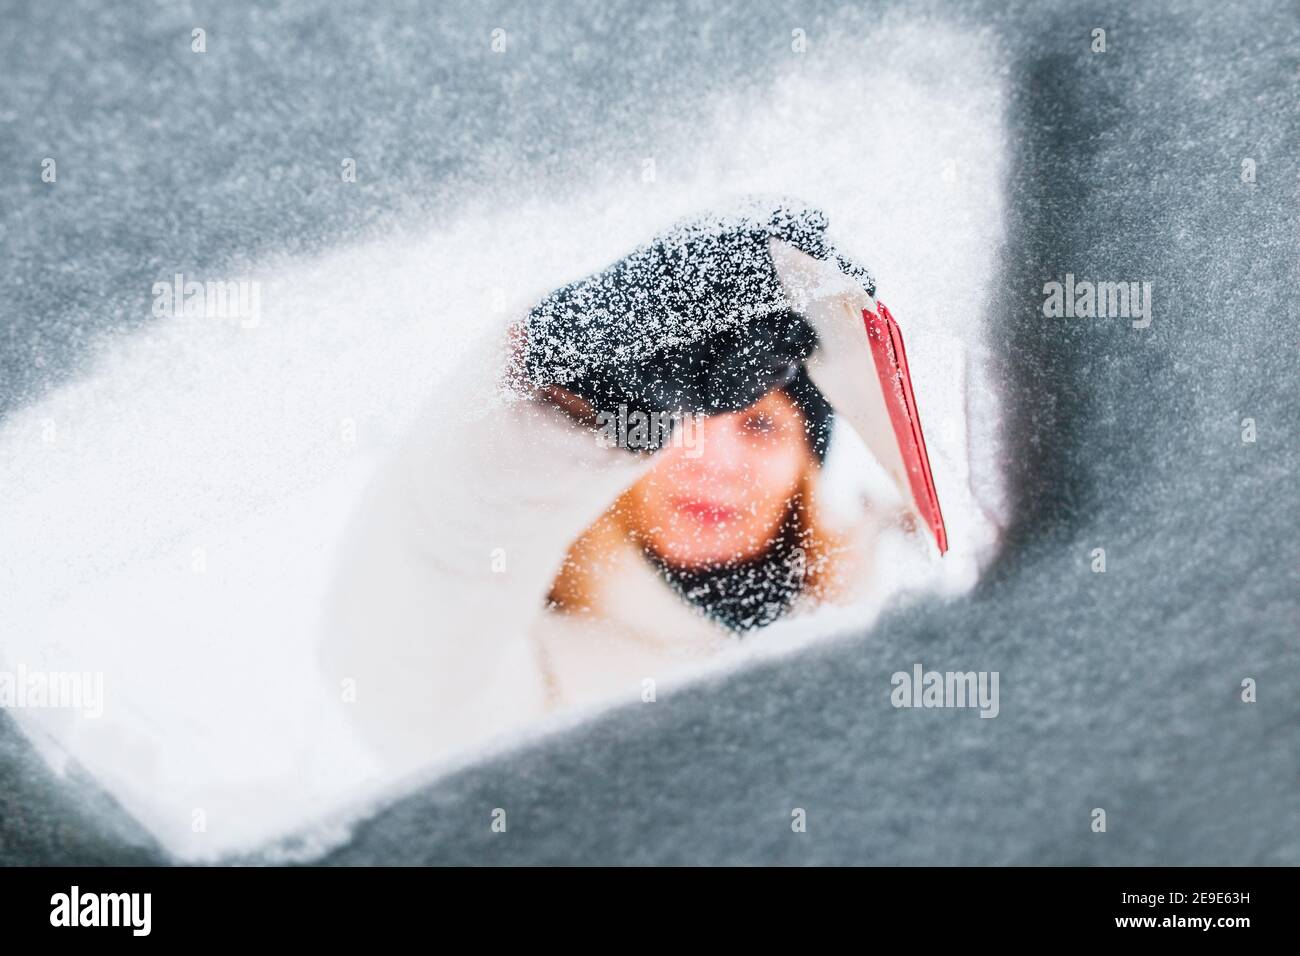 Femme en hiver pour nettoyer la voiture de la neige elle lui-même - elle brosse le pare-brise recouvert de neige Banque D'Images